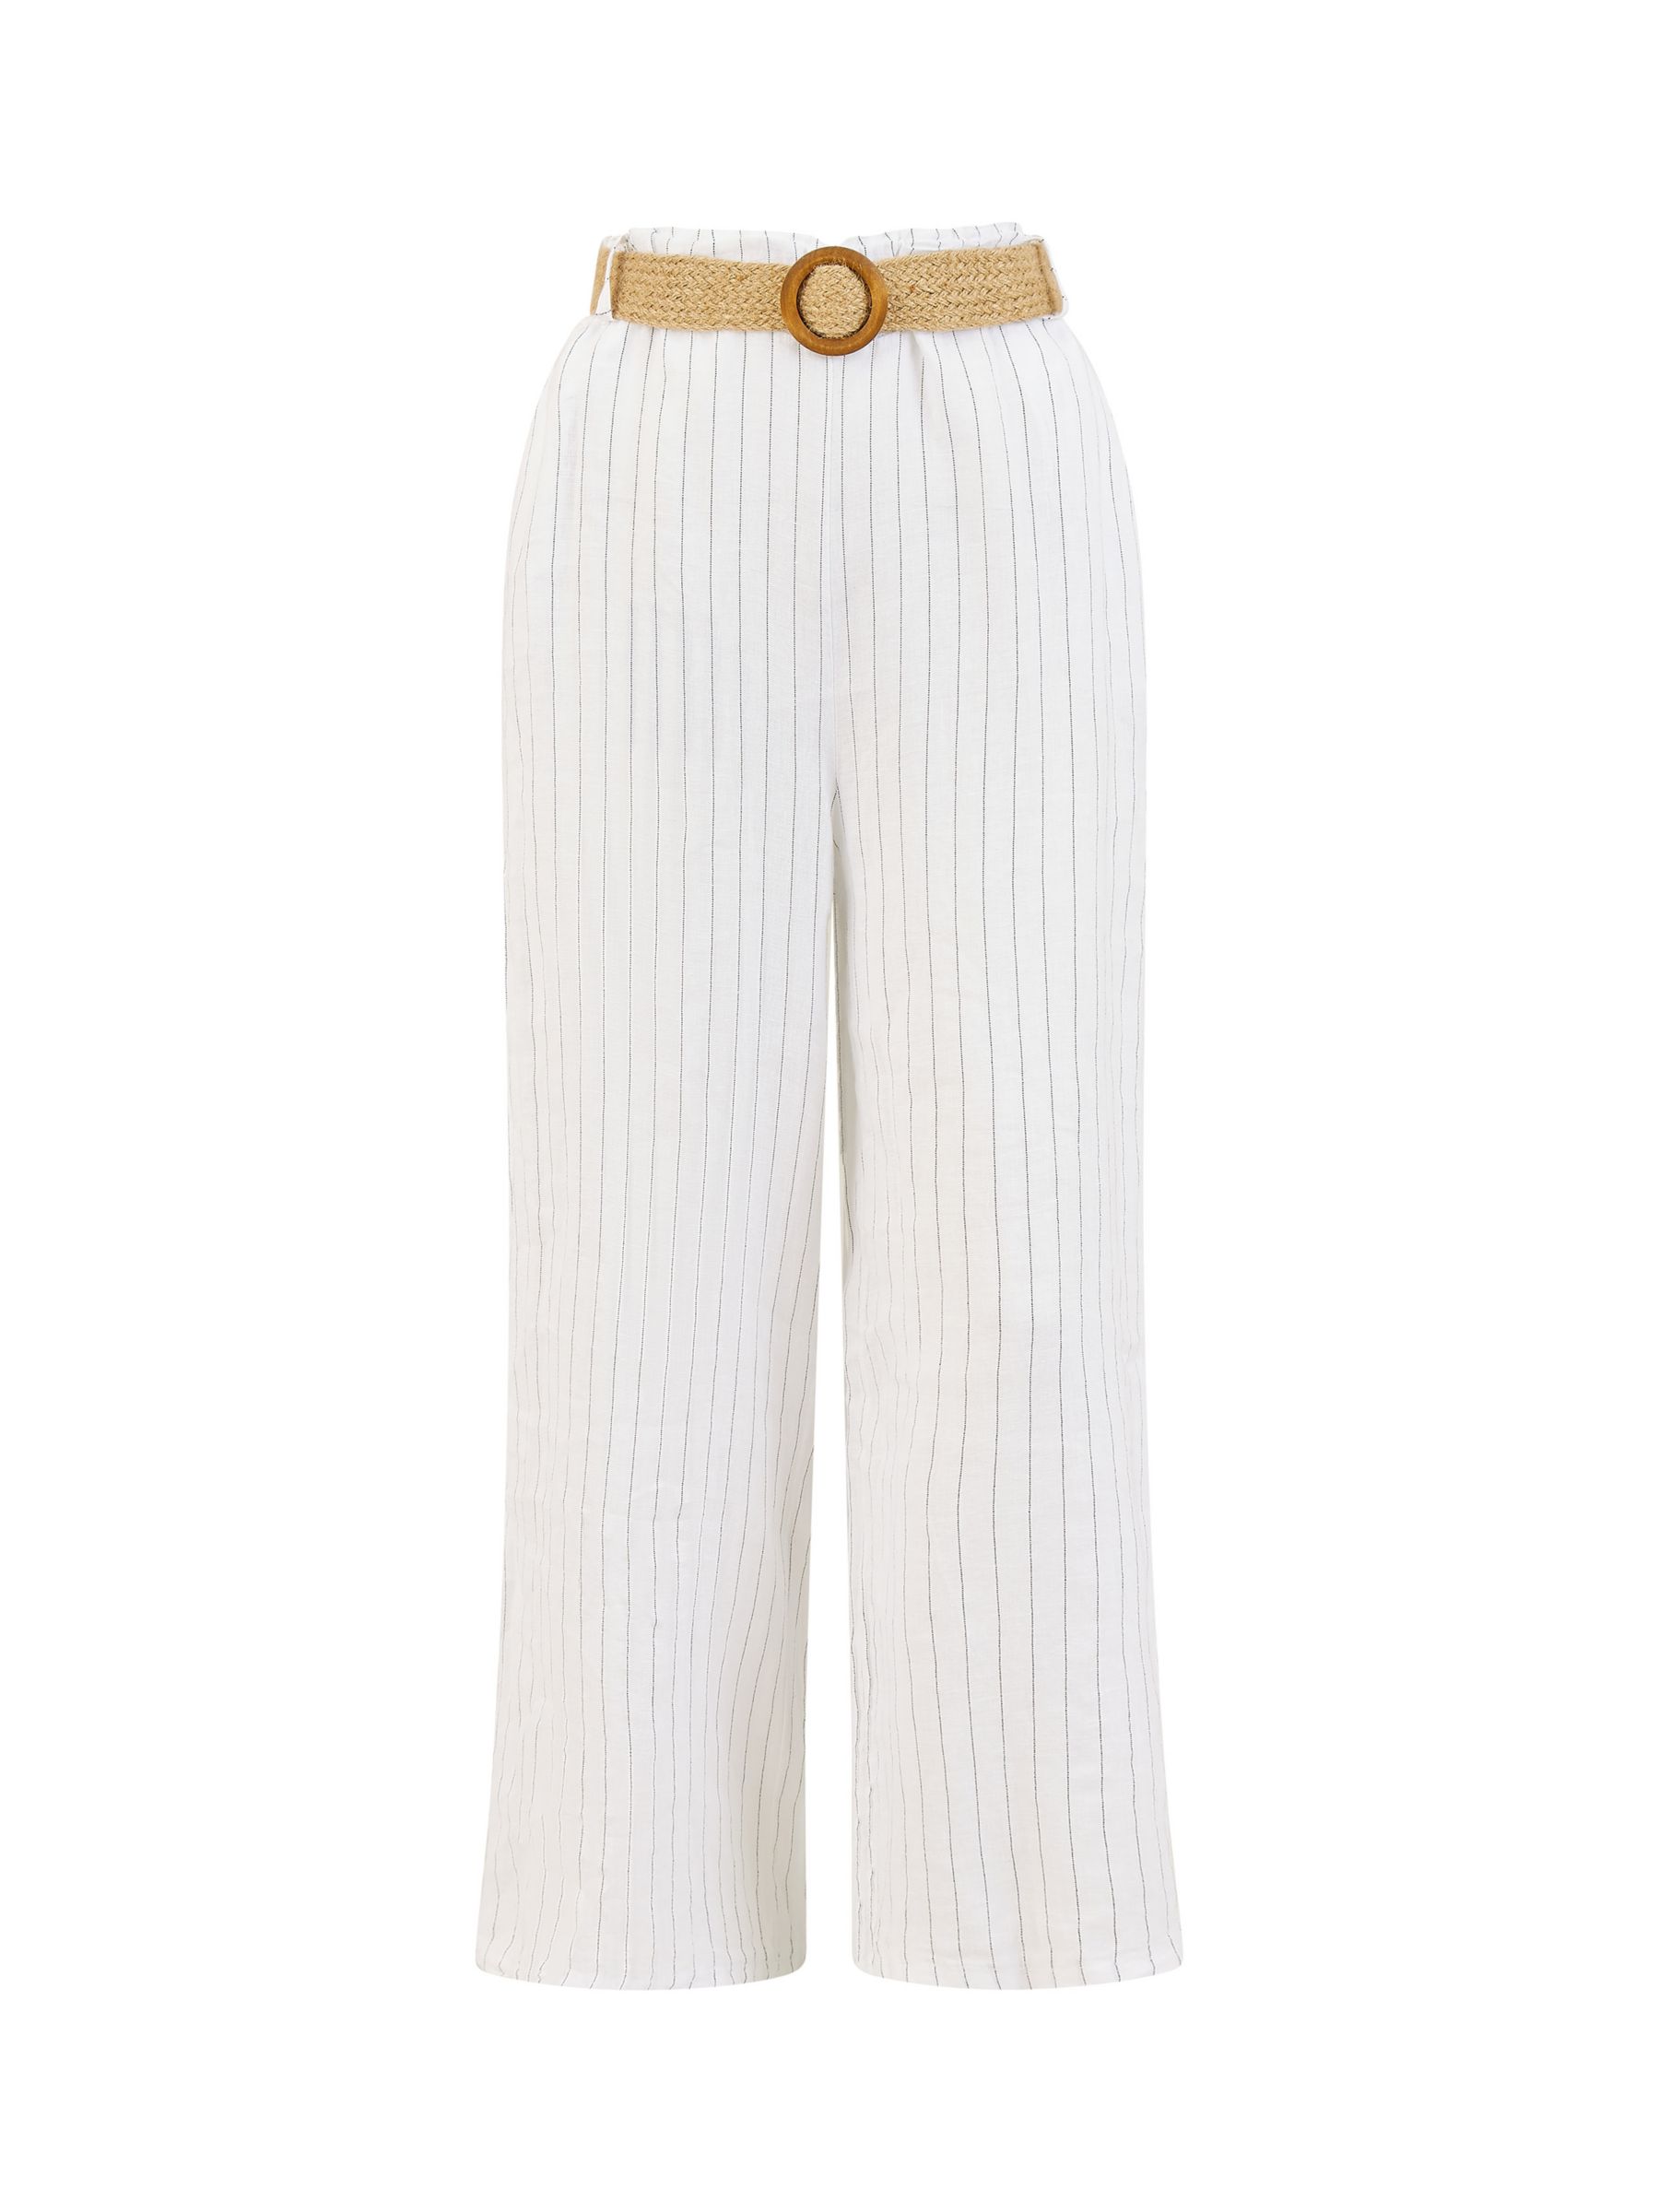 Yumi Italian Linen Striped Wide Leg Trousers & Belt, White, S